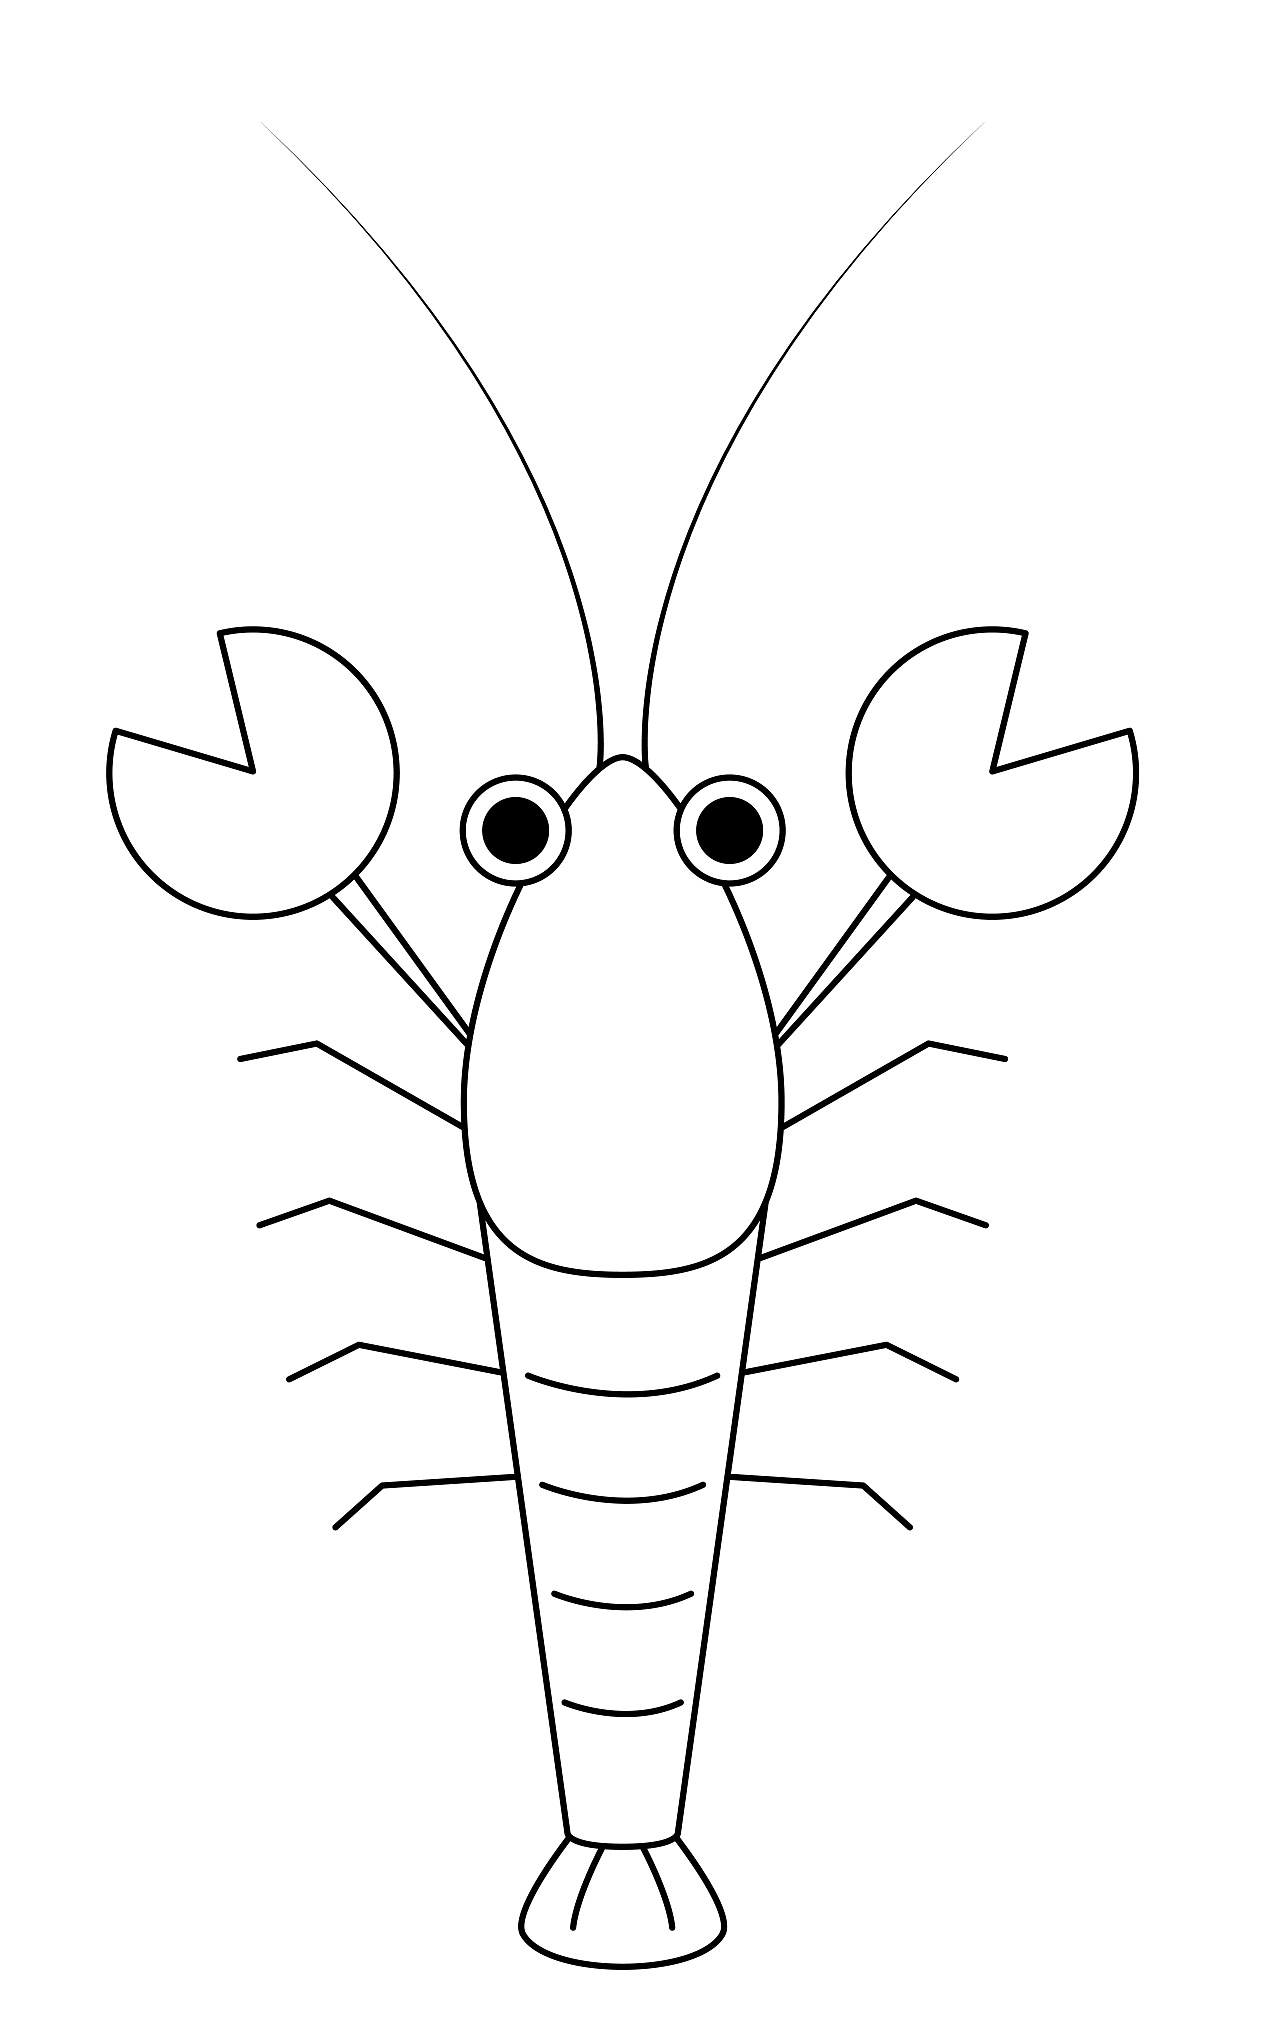 少儿3-6岁美术大全 实用简笔画龙虾的画法过程图 肉丁儿童网